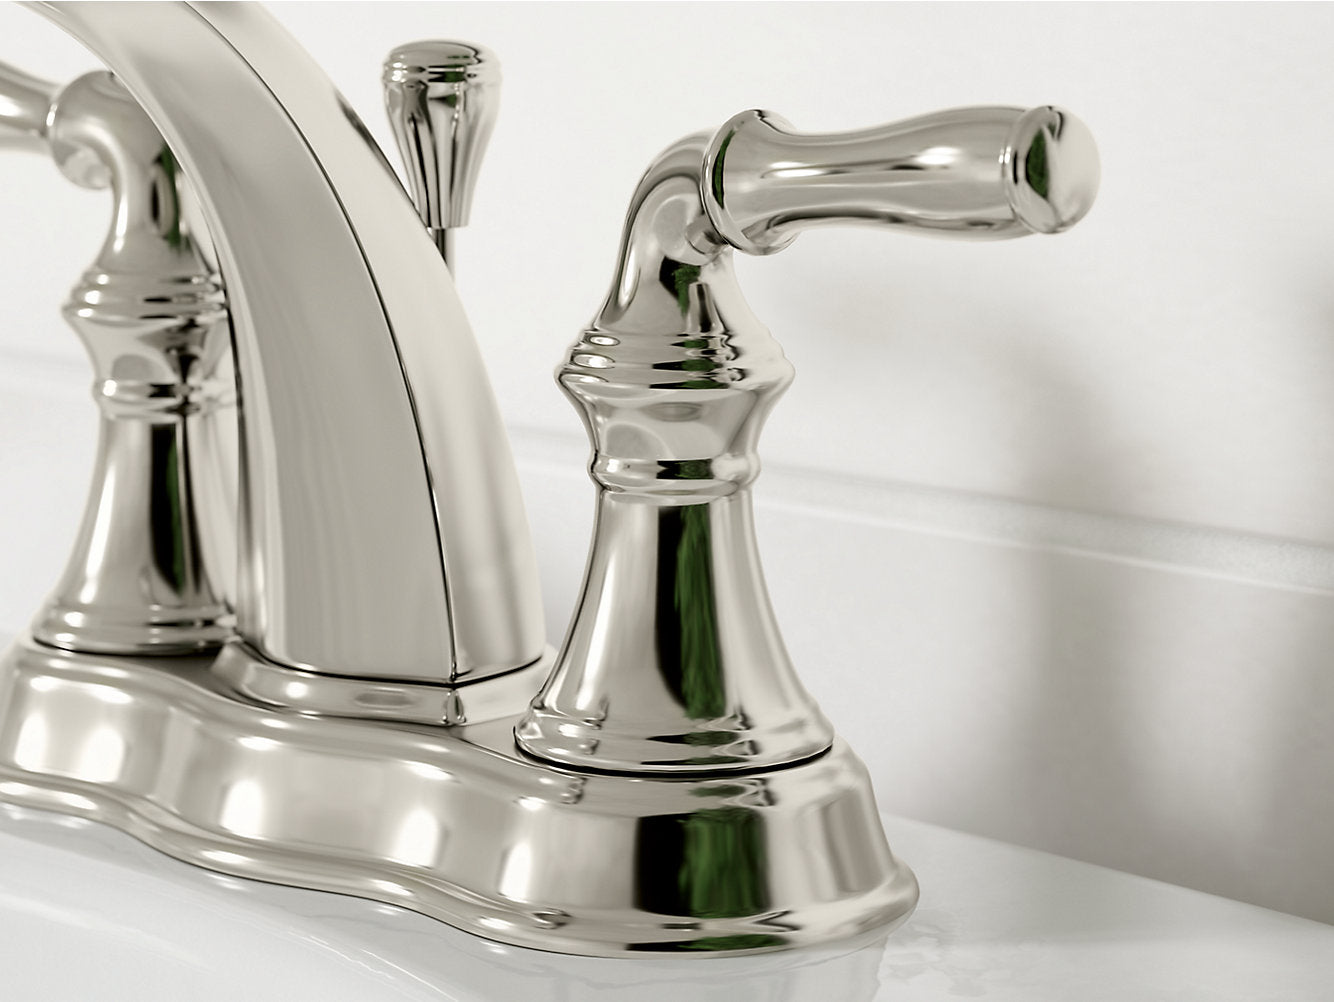 Kohler Devonshire Centerset Bathroom Sink Faucet - Vibrant Brushed Nickel